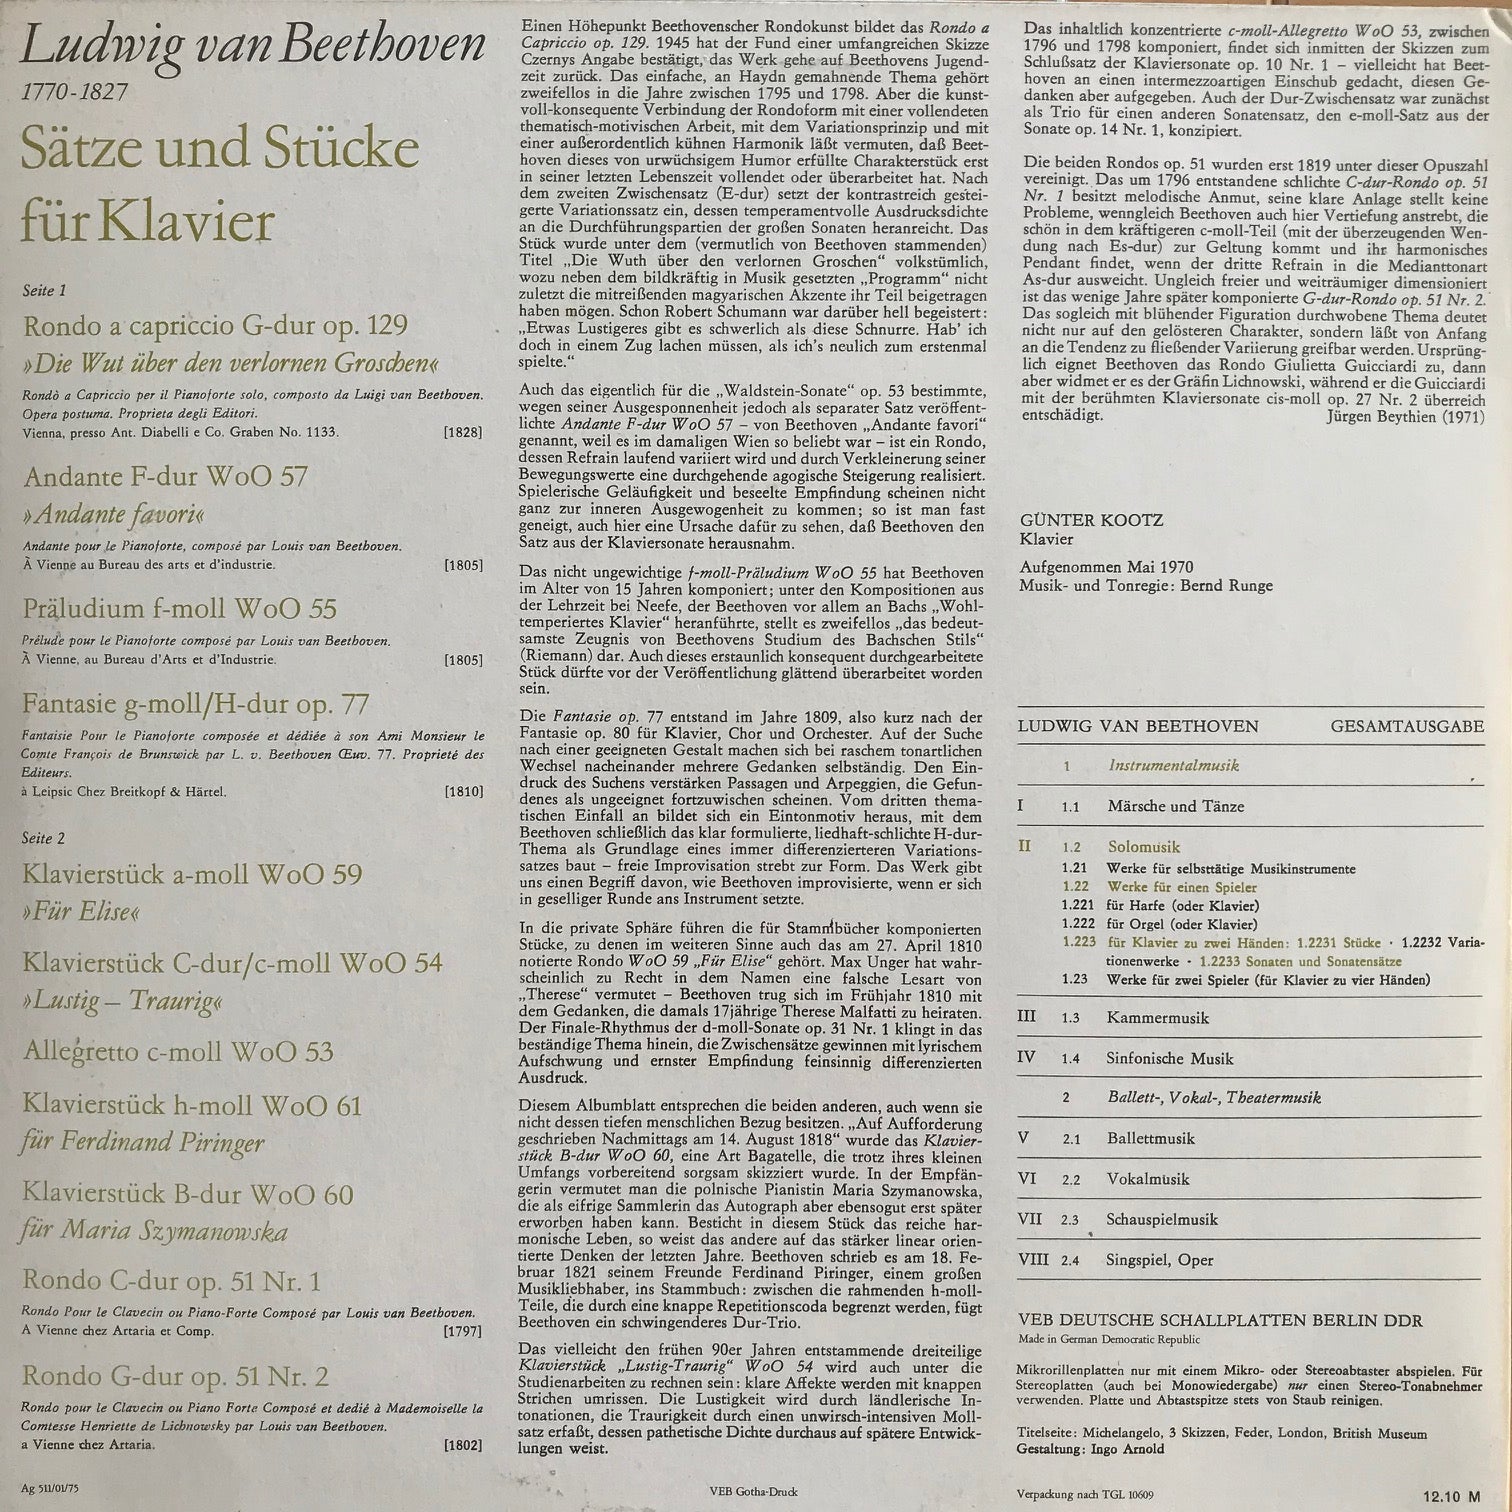 Ludwig van Beethoven Gesamtausgabe; Sätze und Stücke für Klavier